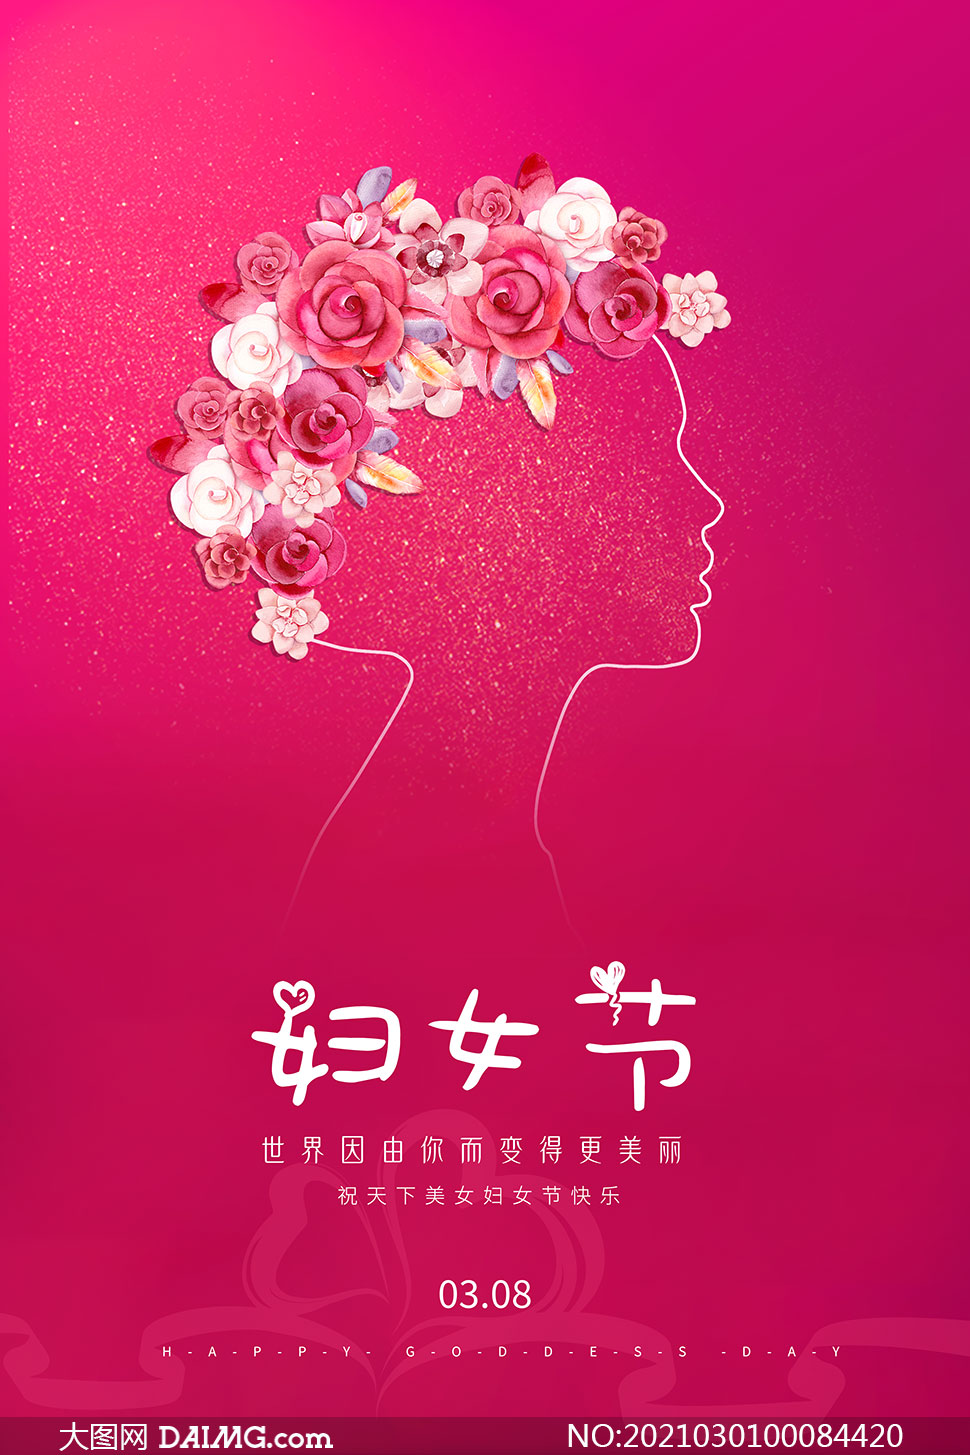 38妇女节创意活动海报设计psd素材